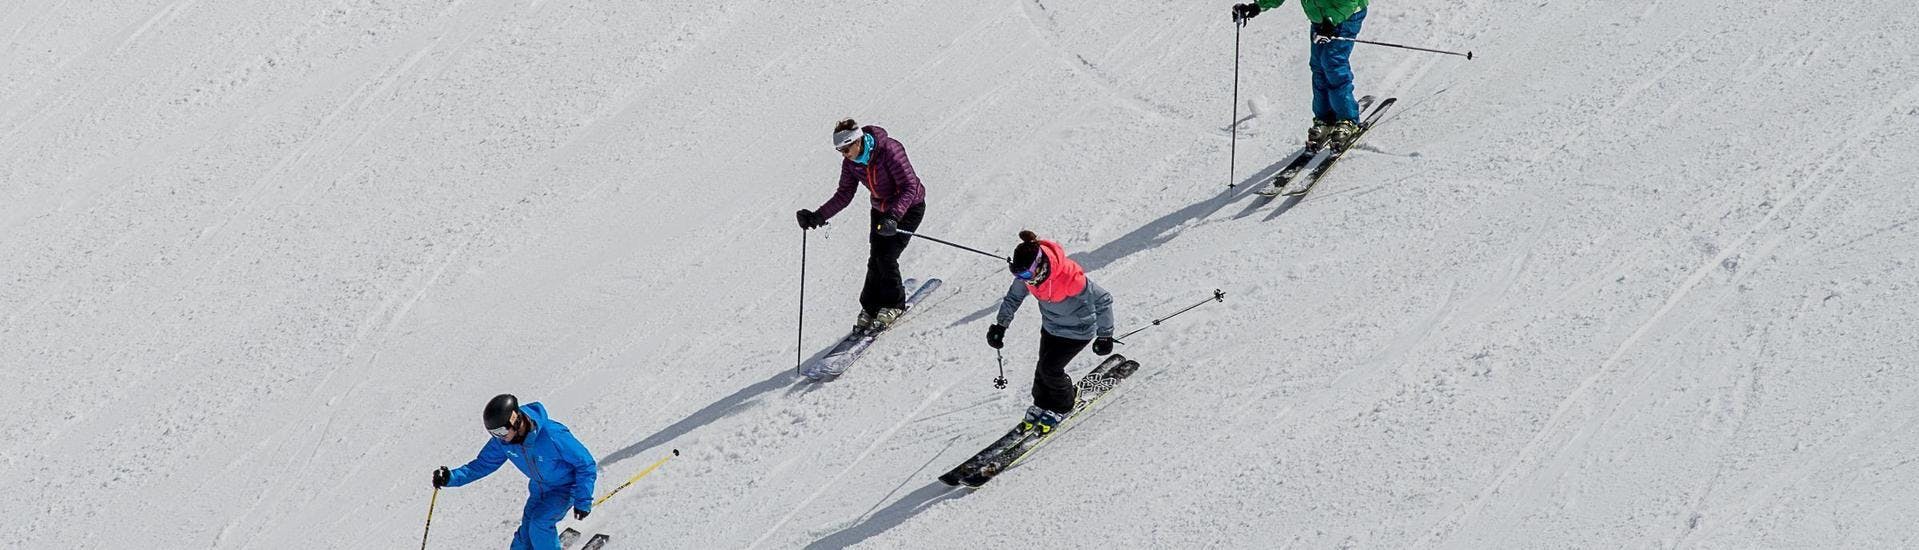 ▷ Privater Skikurs für Erwachsene aller Levels ab 64 € - Val Thorens -  CheckYeti